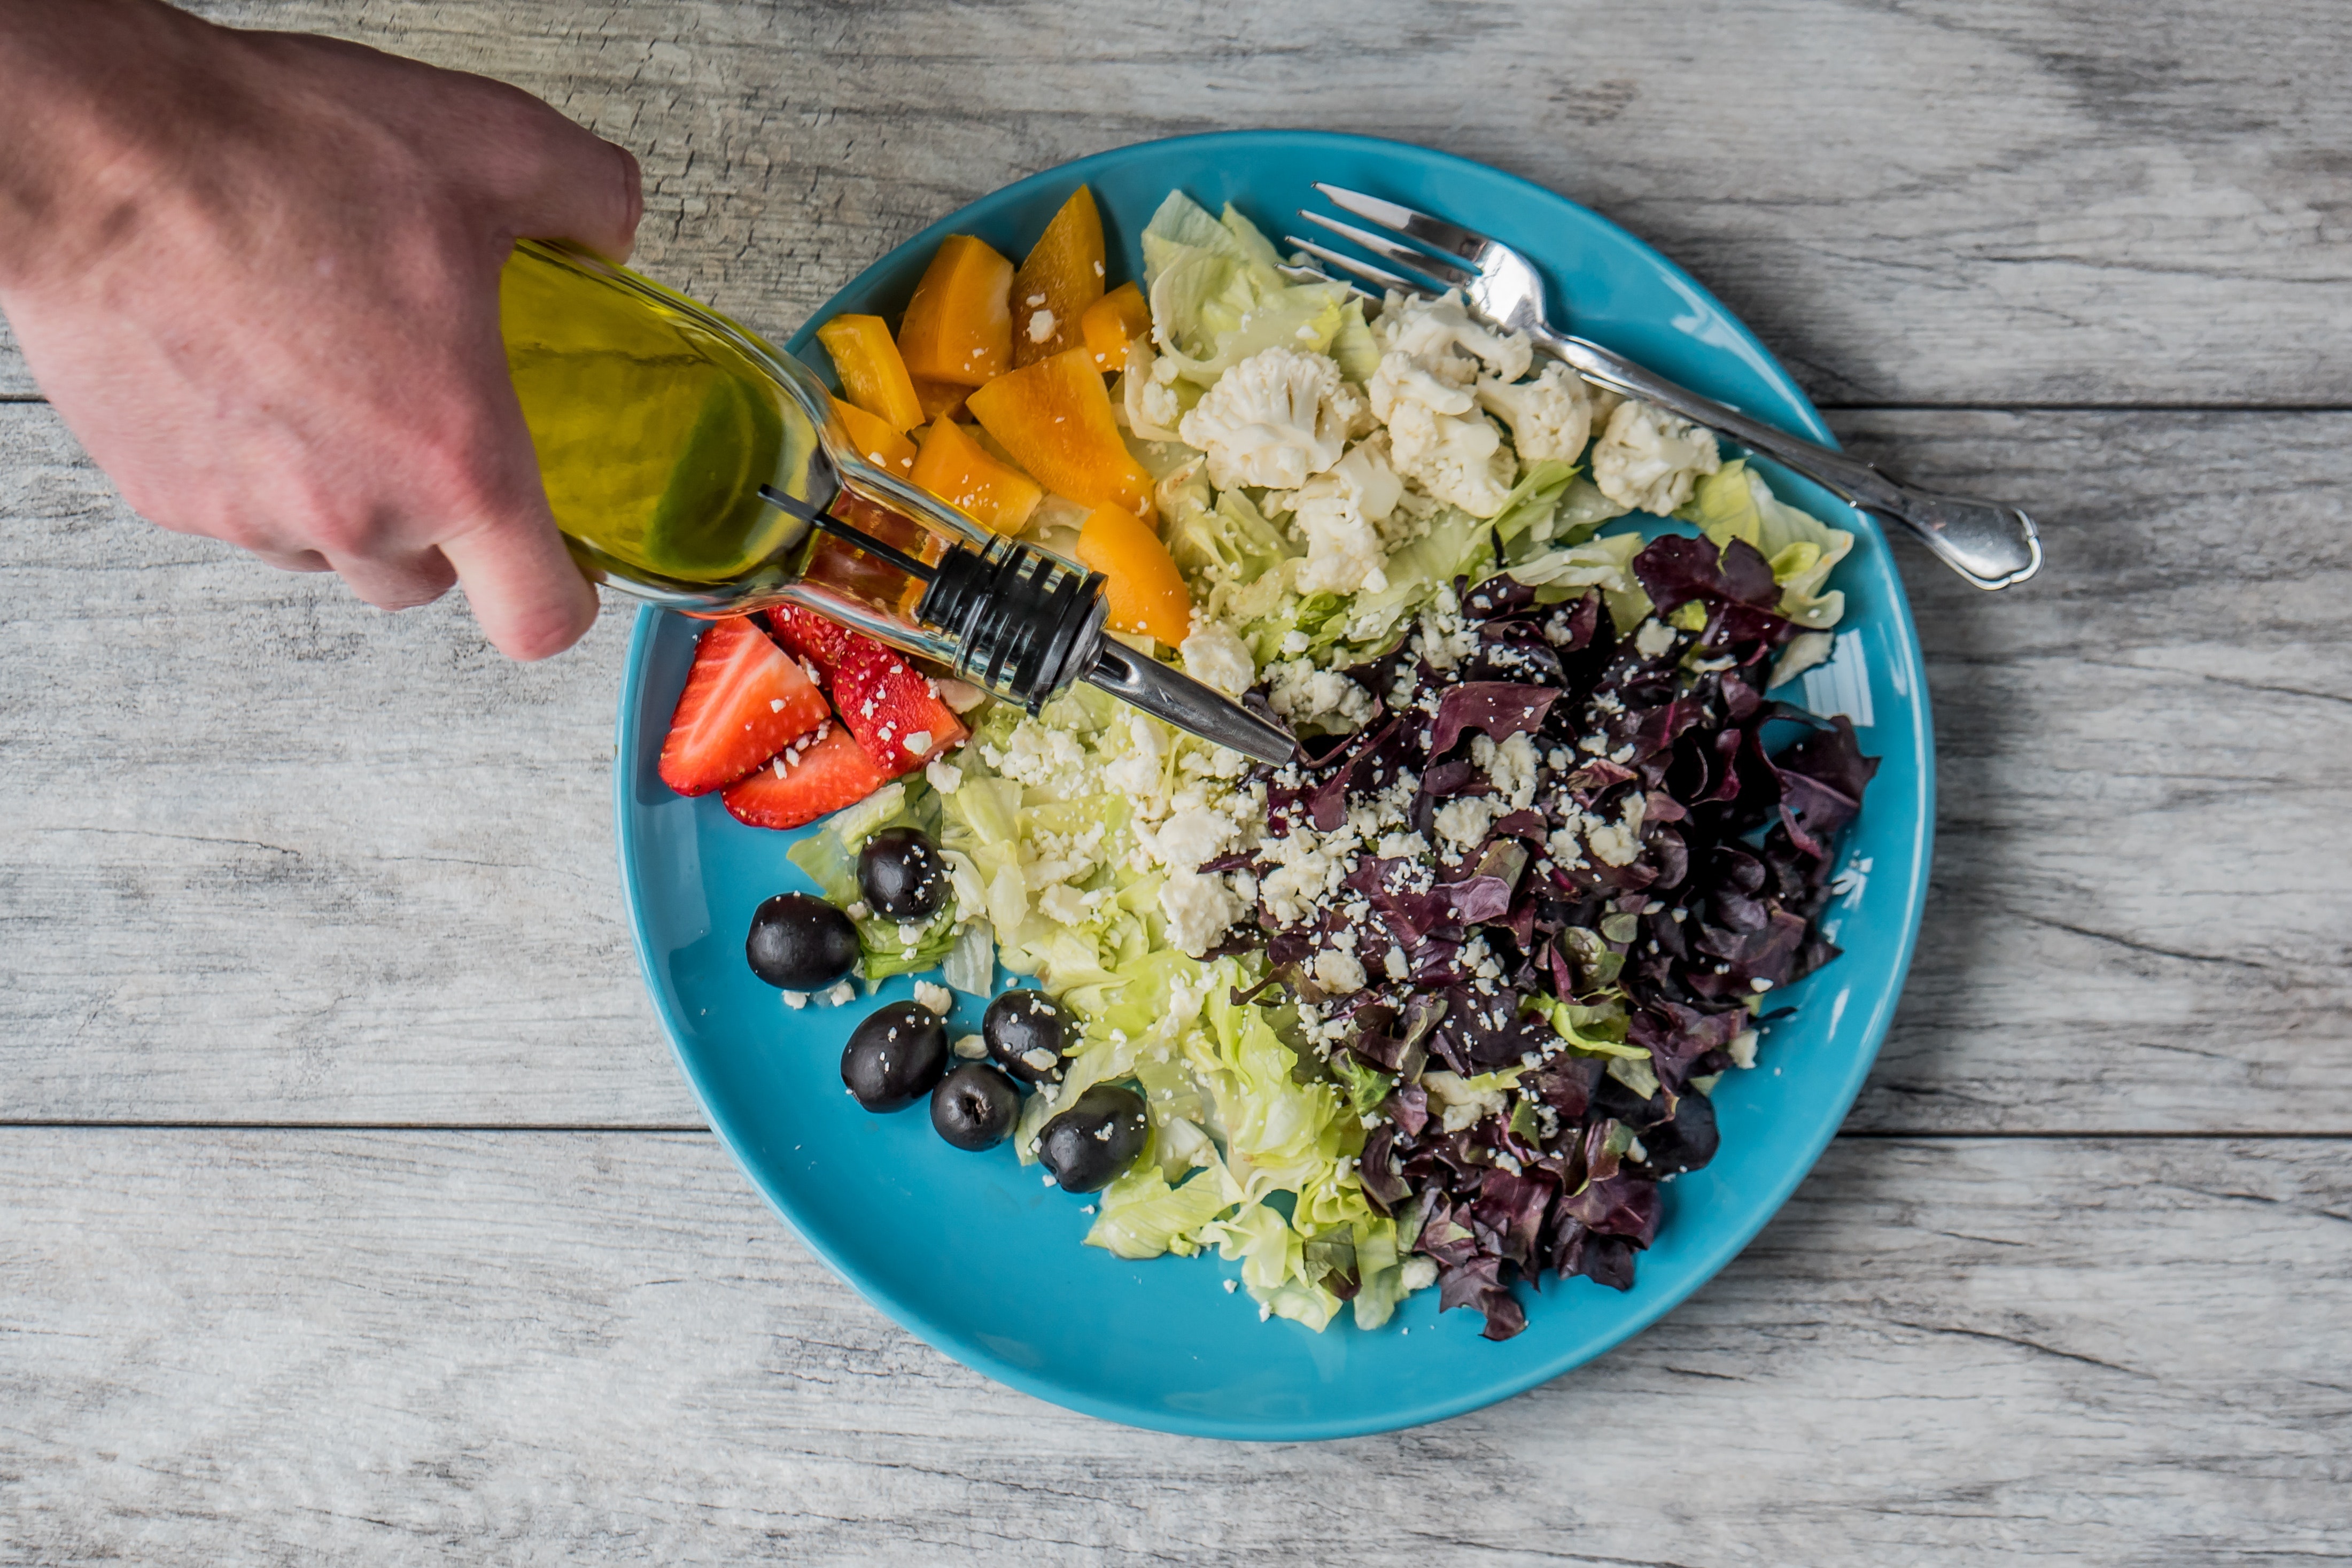 KalorienFalle Salat - 5 Tipps die Du beachten solltest